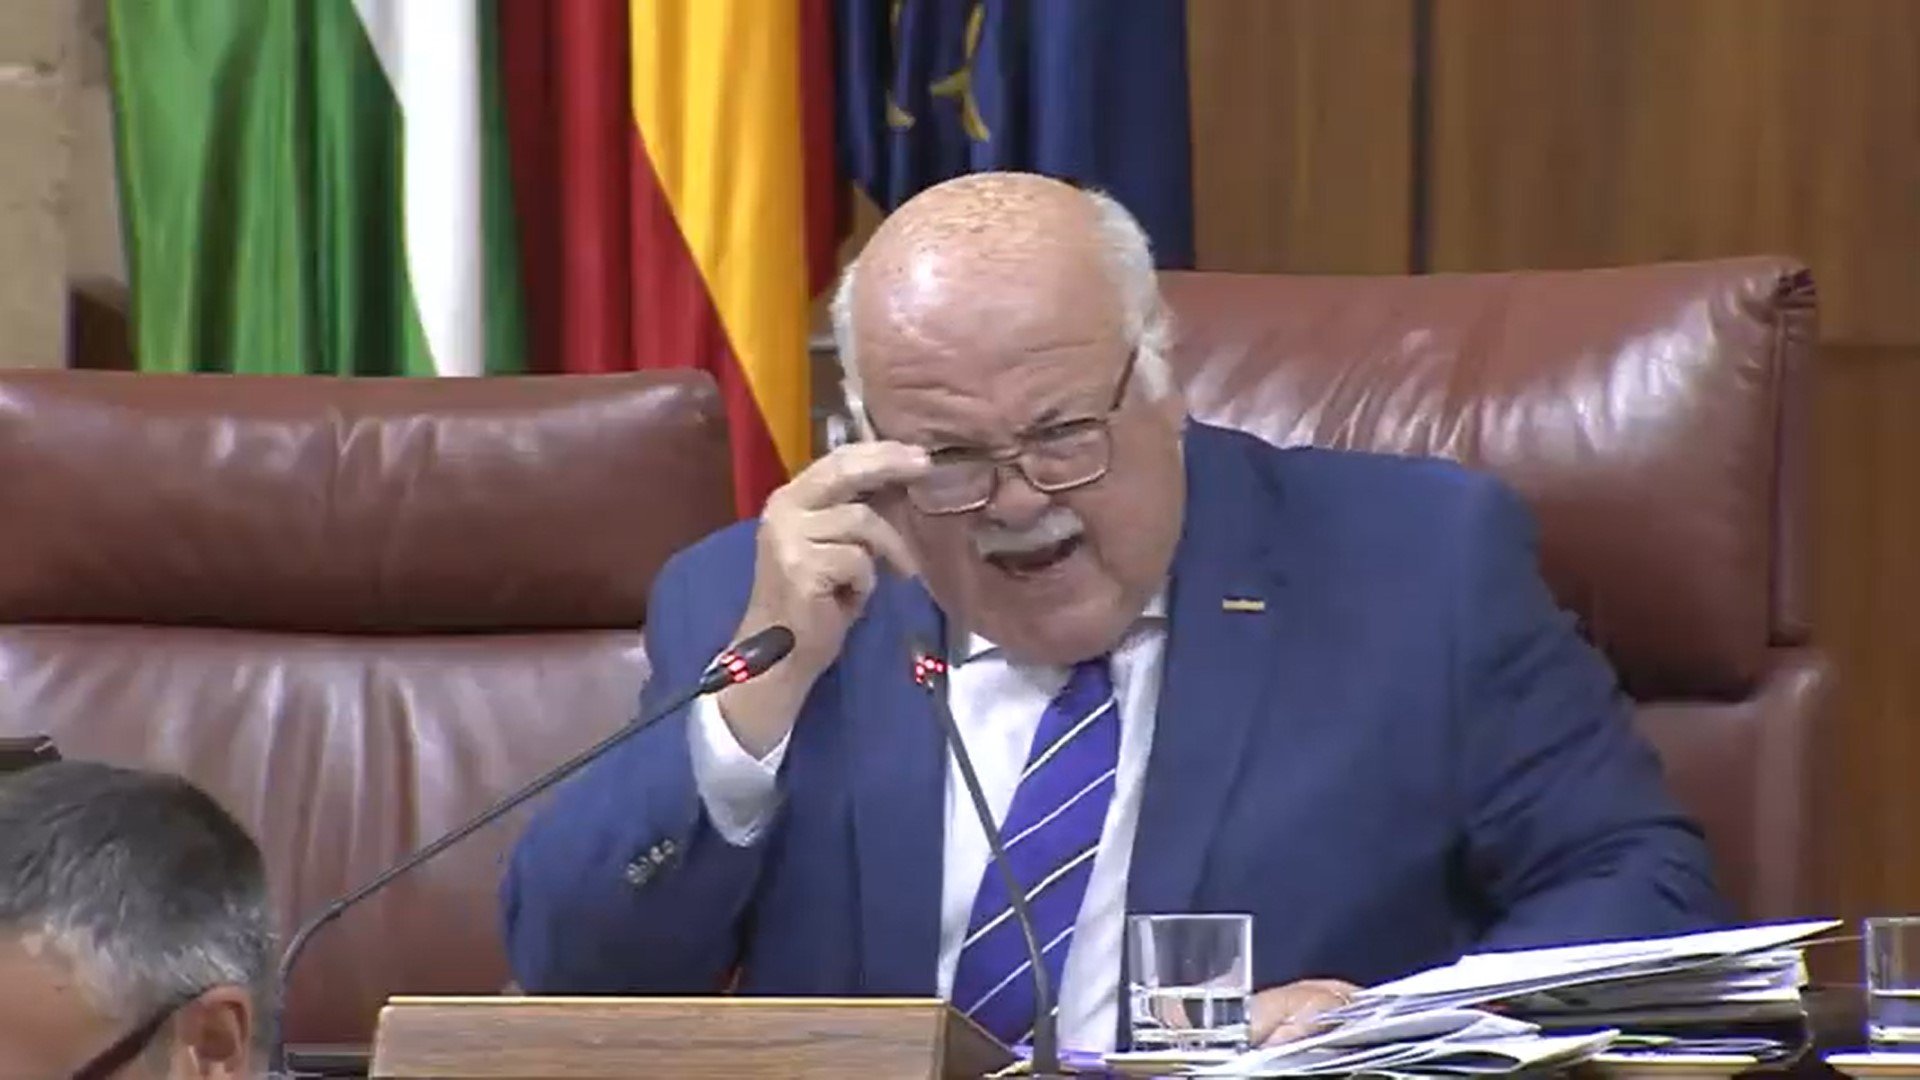 Hacen sonar el NODO en el Parlamento andaluz cuando interviene Vox y el presidente explota: "¡Grosero!"